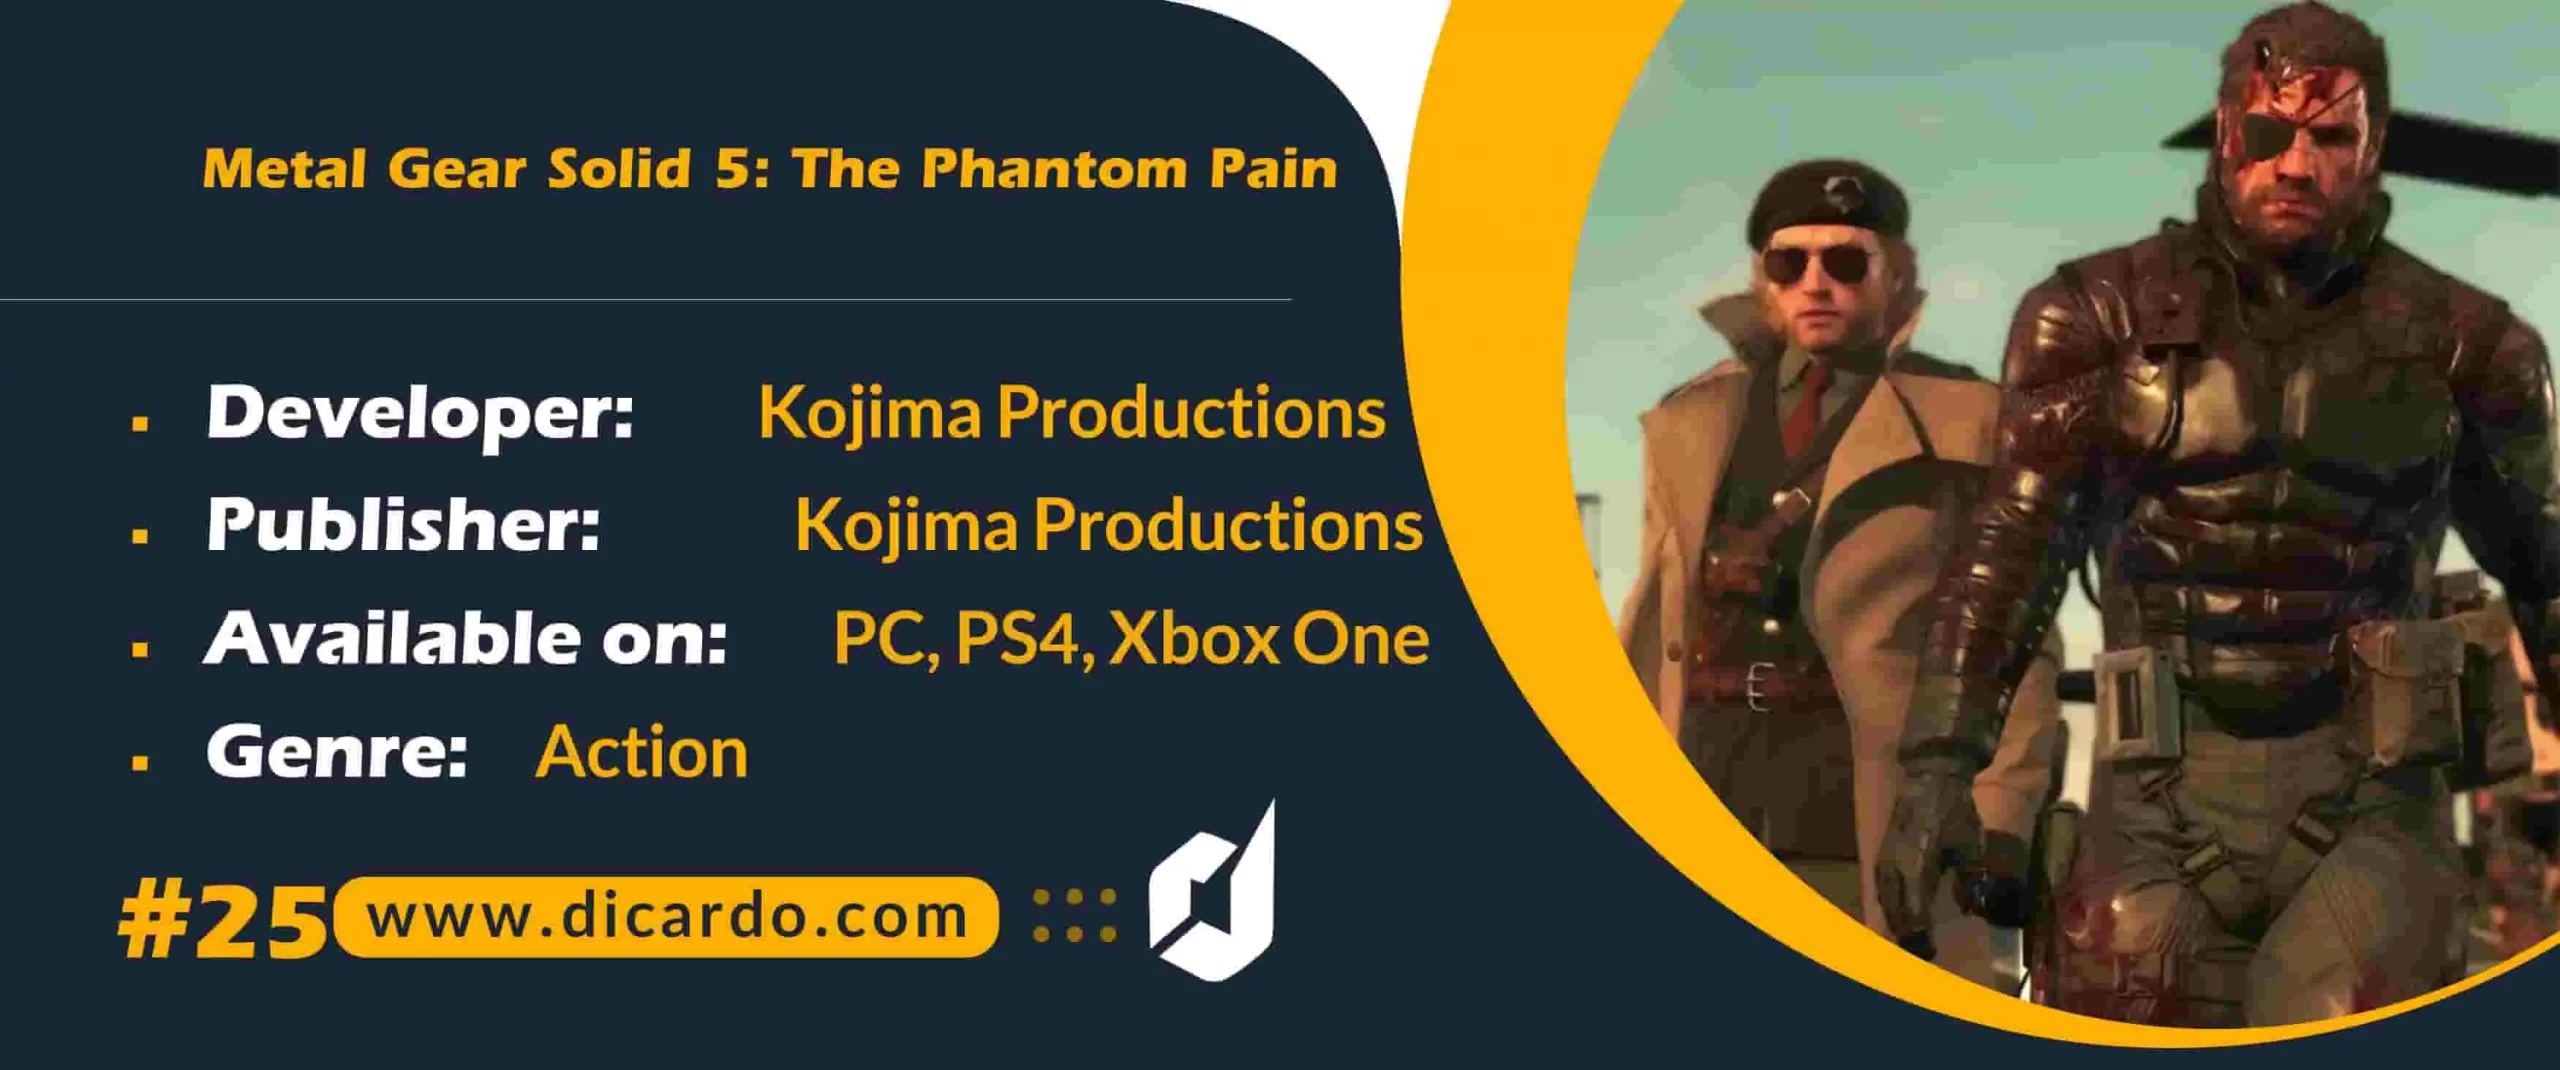 #25 متال گر سالد فایو: د فانتوم پین Metal Gear Solid 5: The Phantom Pain آخرین مورد از لیست محبوبترین بازیهای اکشن